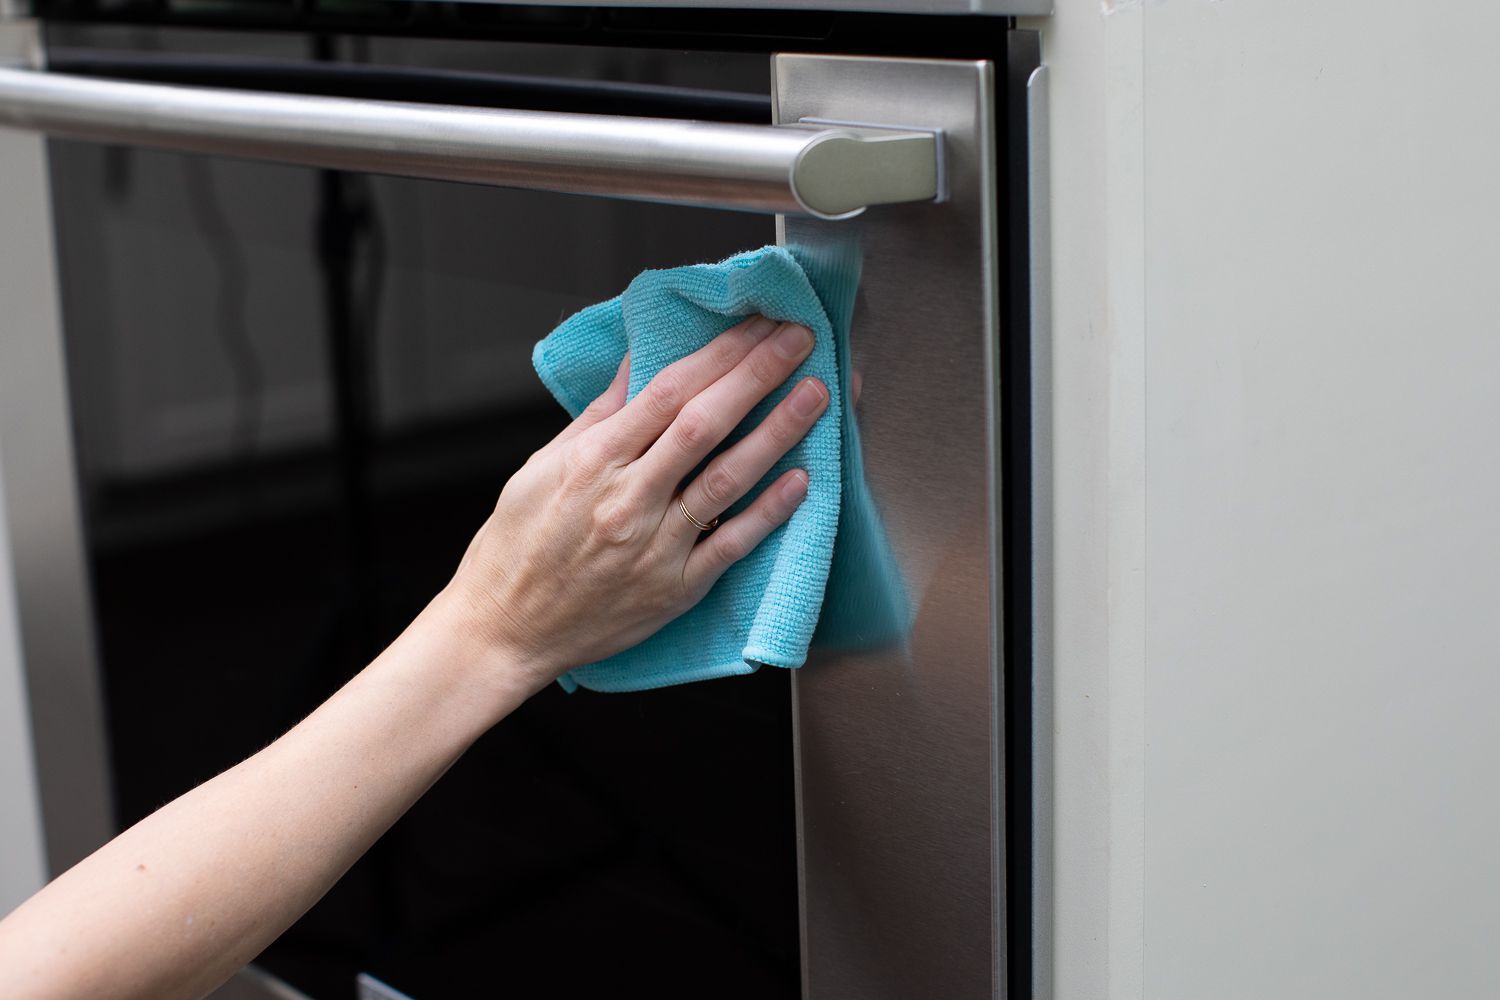 Exterior de la puerta del horno limpiado con un paño de microfibra azul